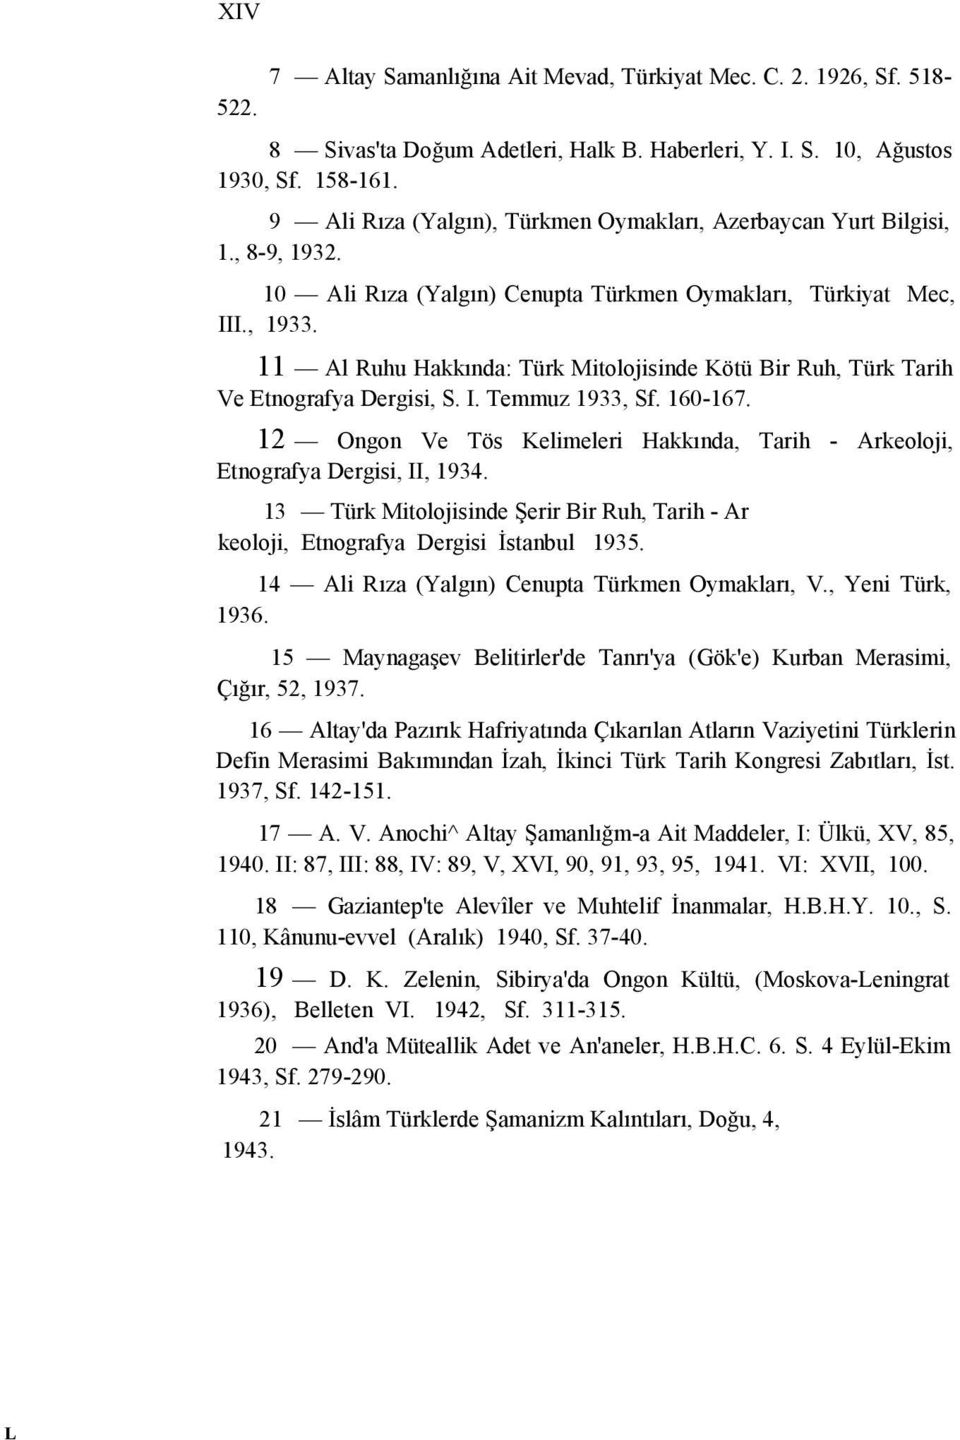 11 Al Ruhu Hakkında: Türk Mitolojisinde Kötü Bir Ruh, Türk Tarih Ve Etnografya Dergisi, S. I. Temmuz 1933, Sf. 160-167.